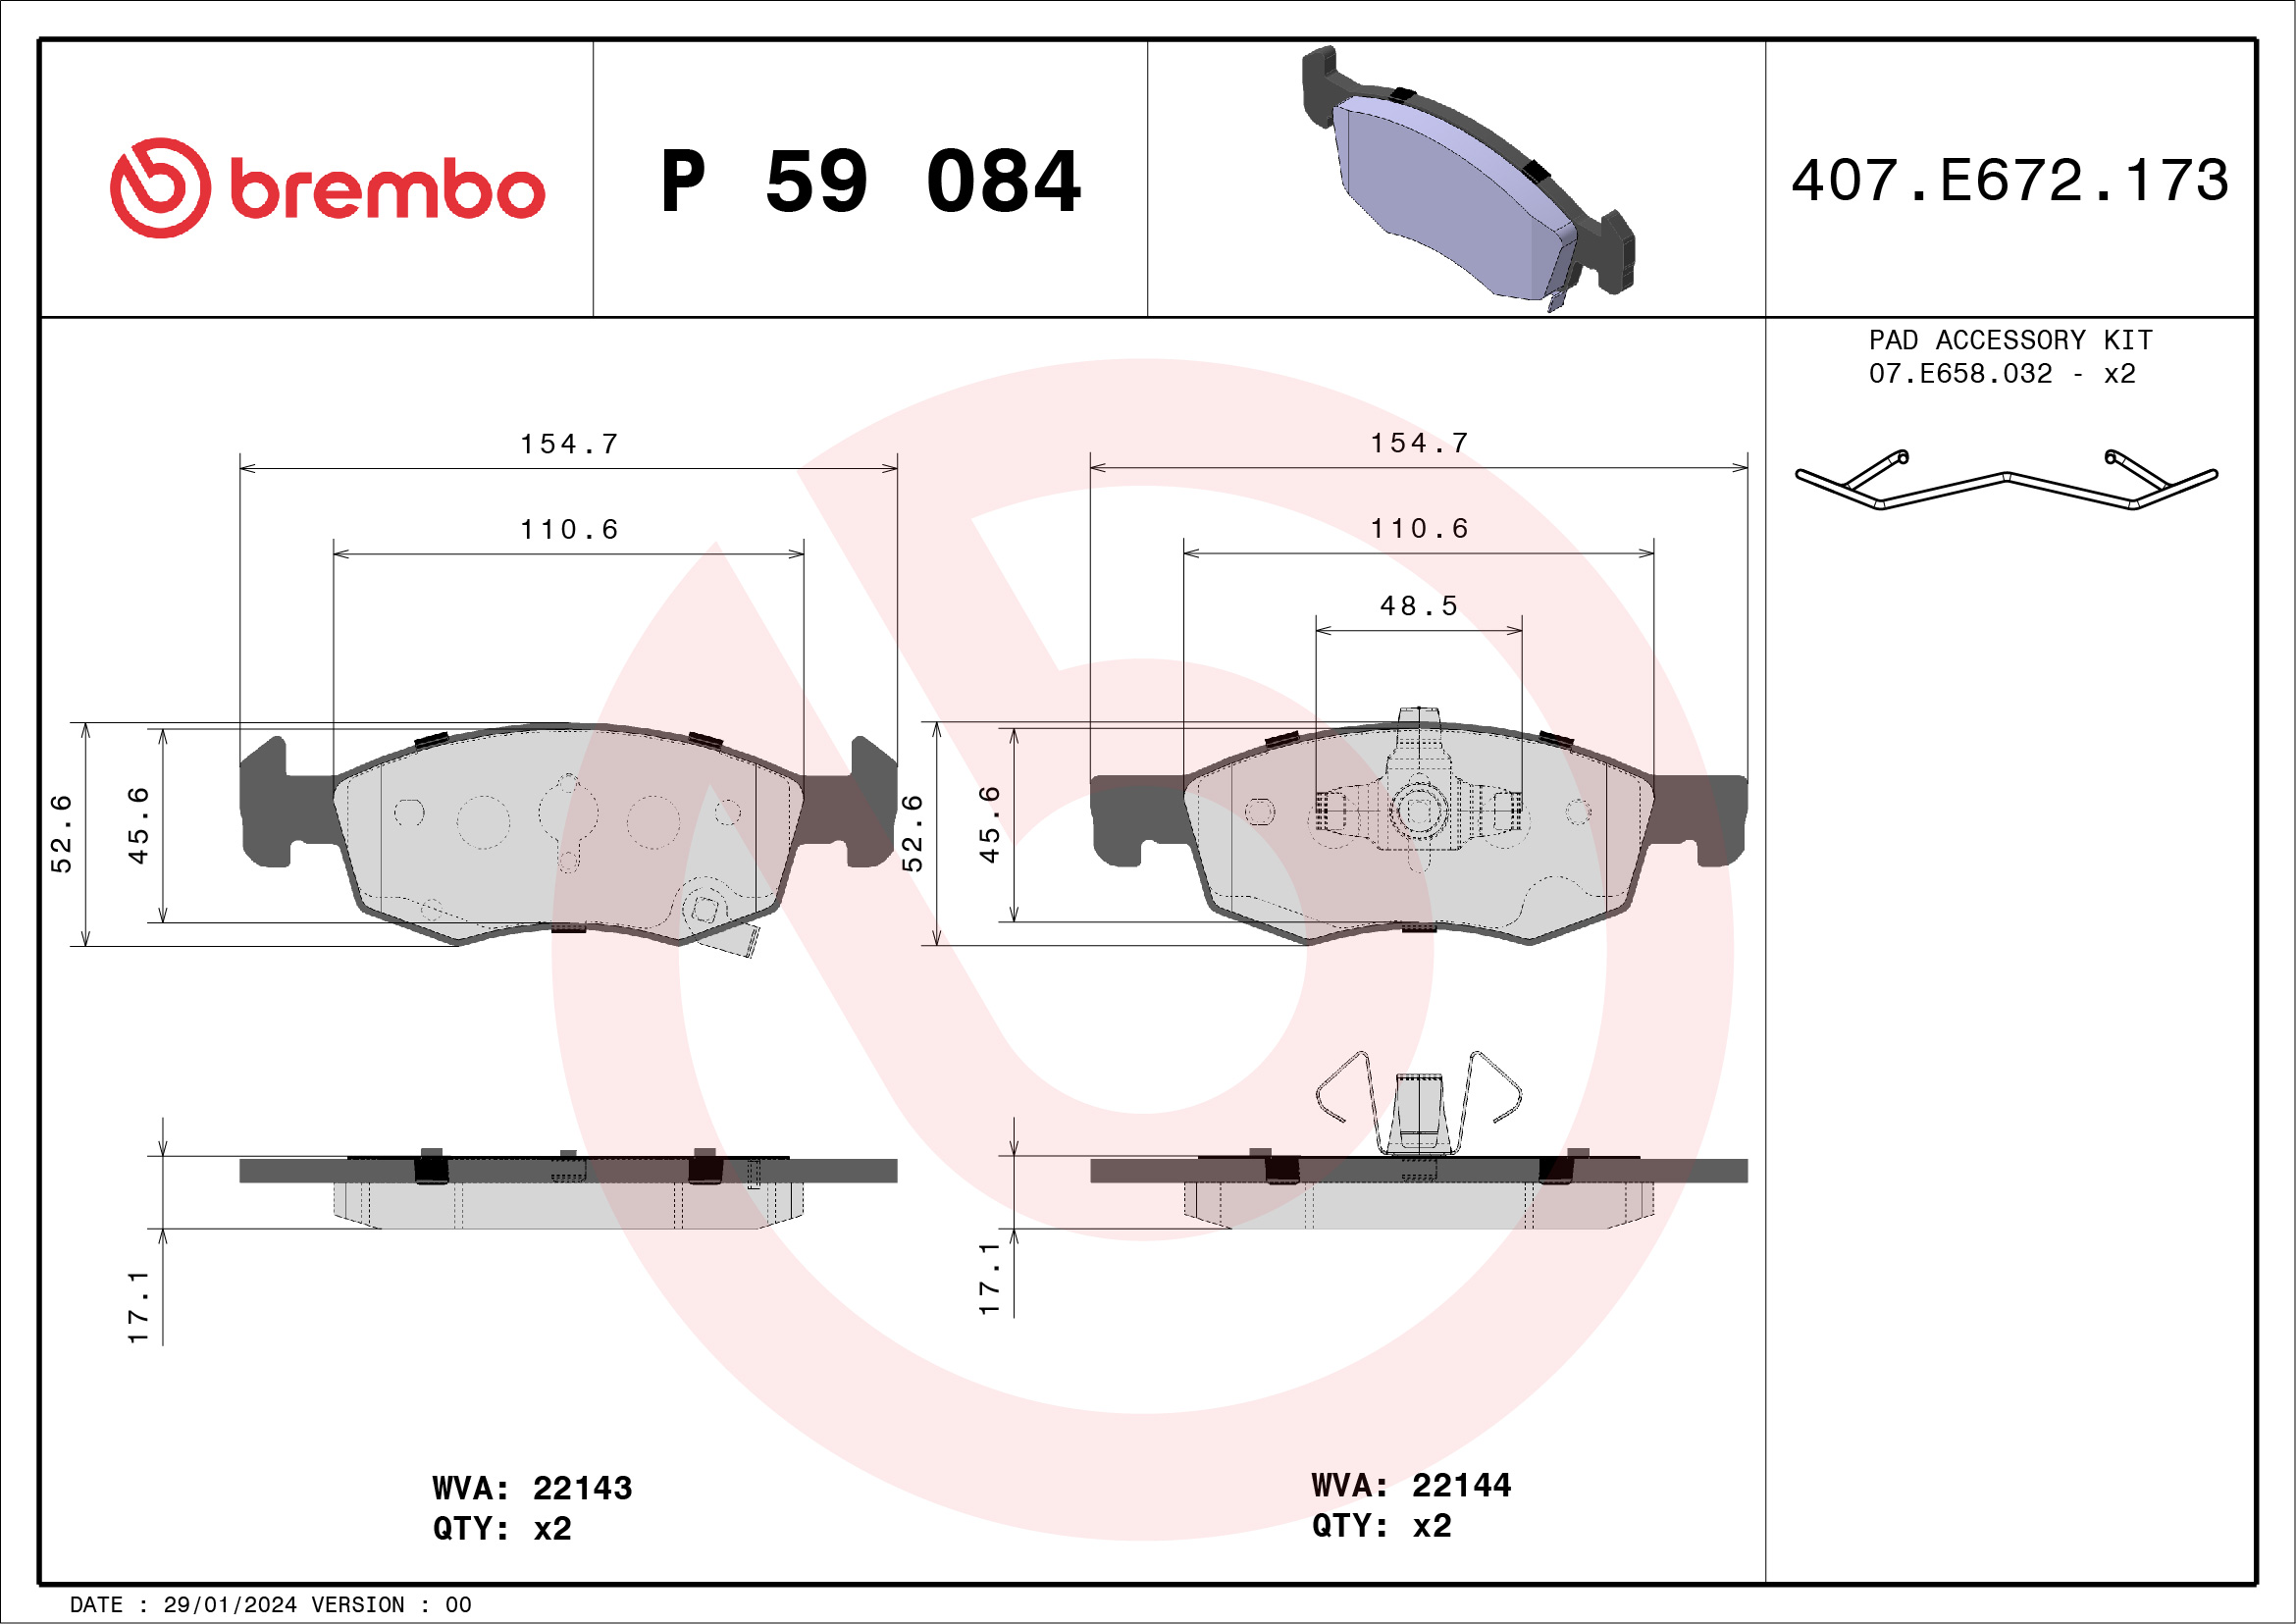 BREMBO P 59 084 Kit...